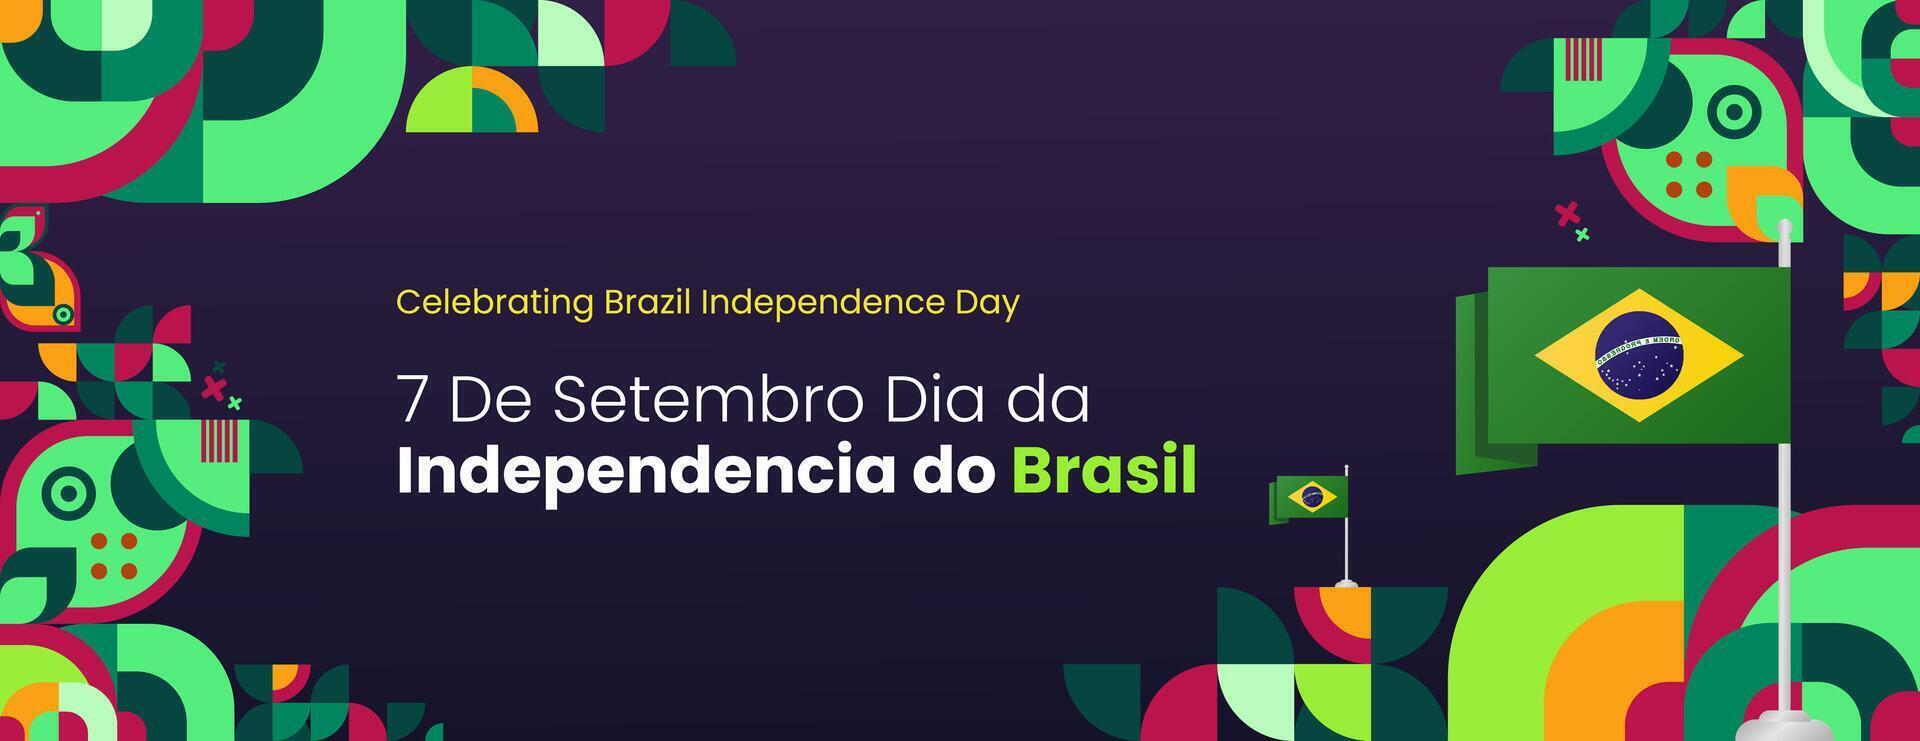 brasile indipendenza giorno bandiera nel moderno colorato geometrico stile. nazionale indipendenza giorno saluto carta con tipografia. orizzontale sfondo per nazionale vacanza celebrazione festa vettore